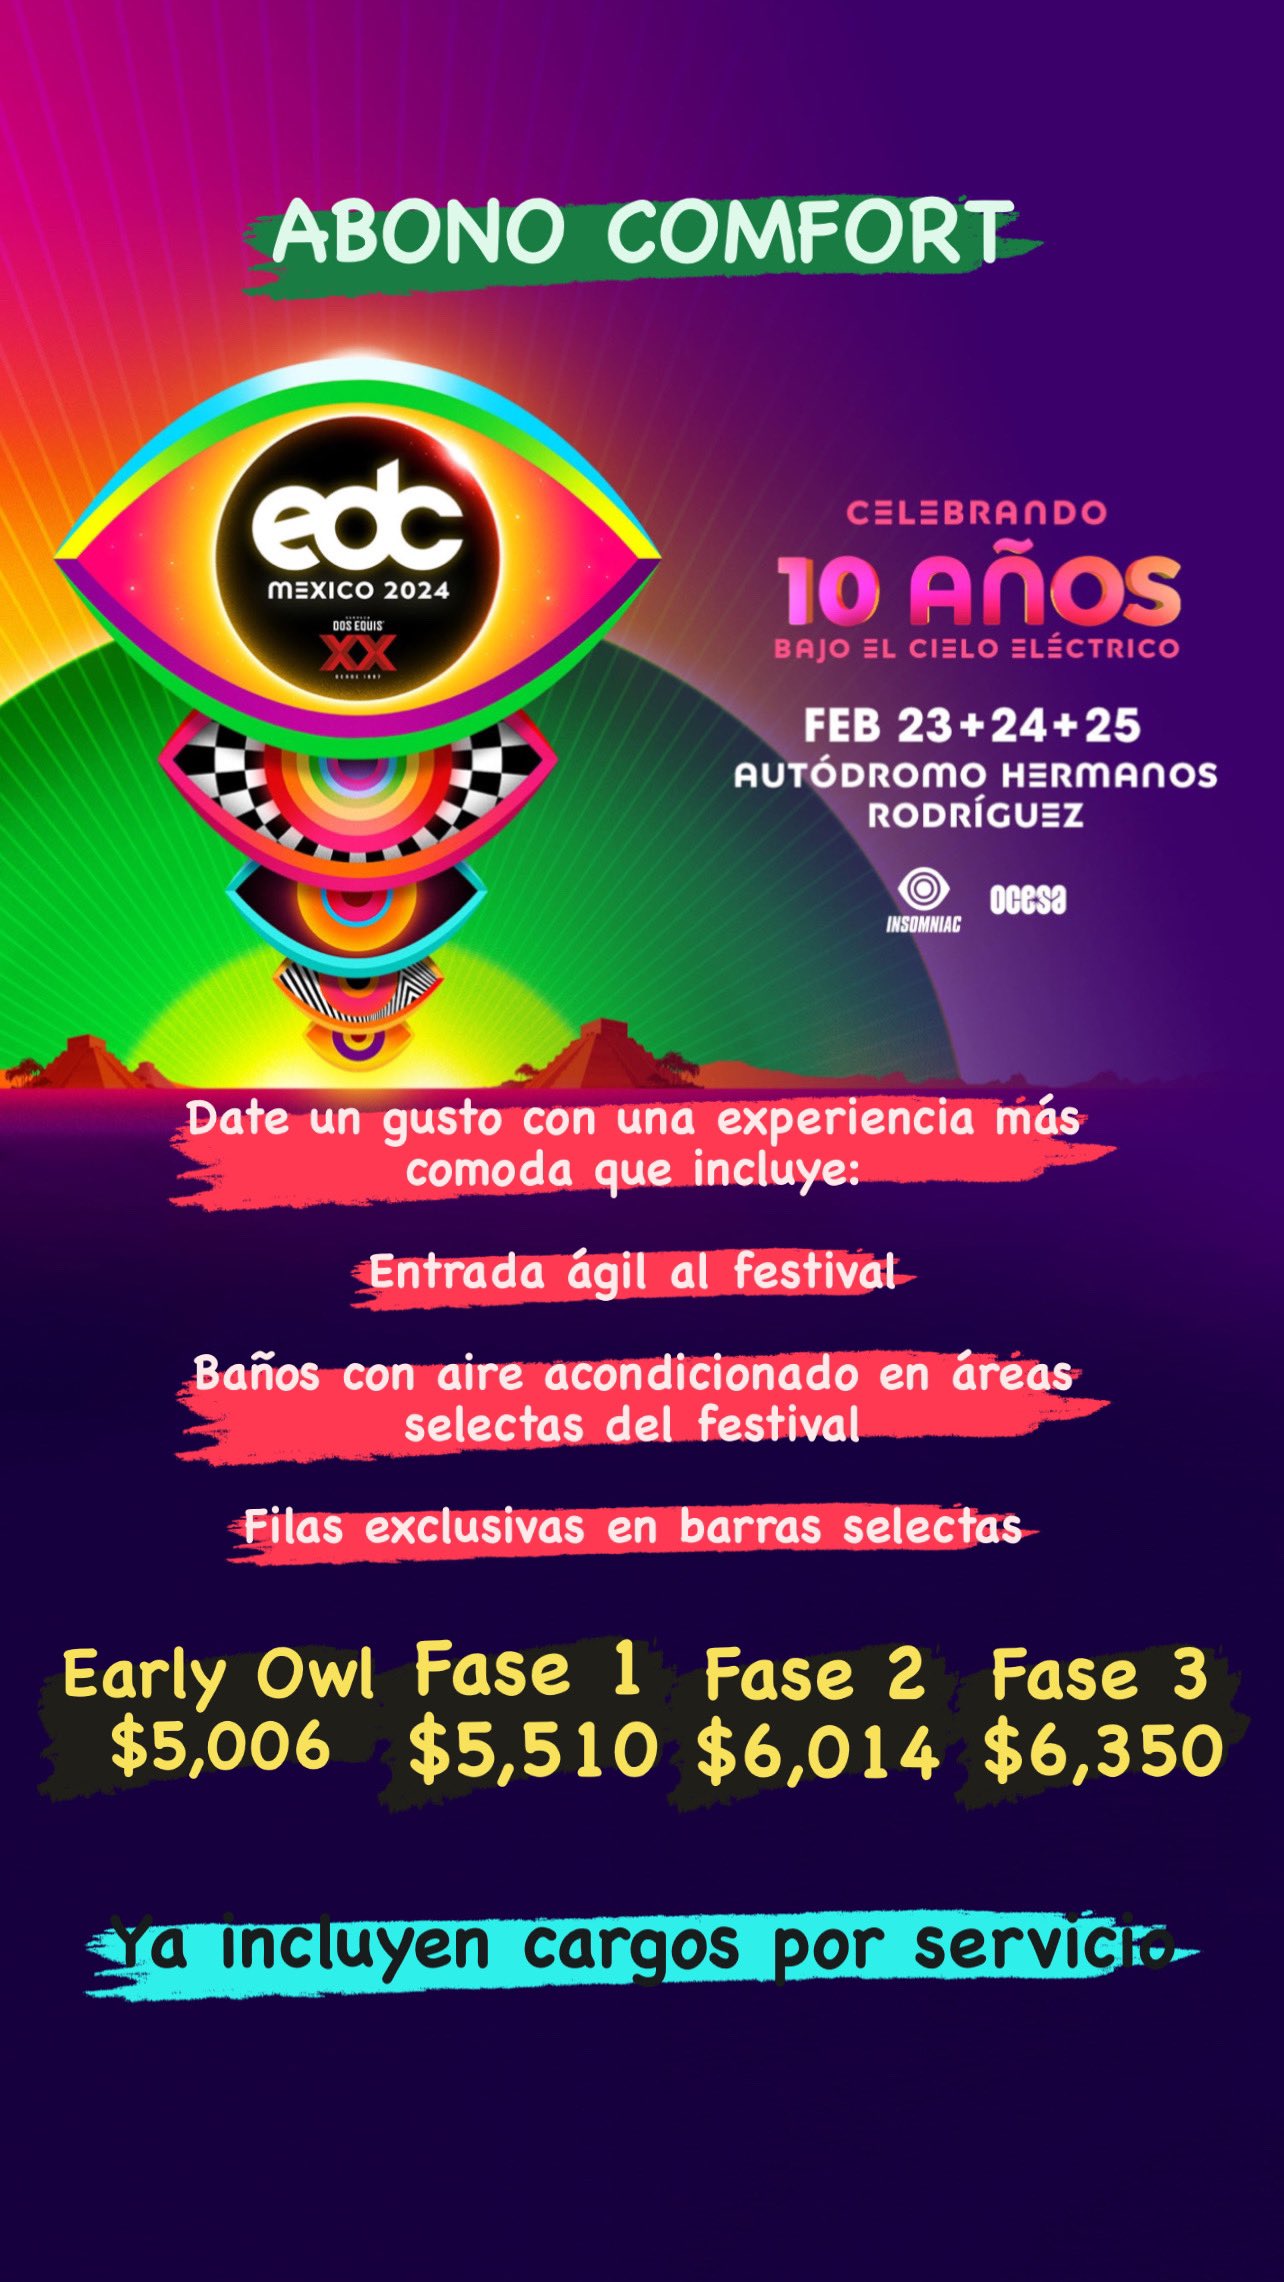 EDC México 2024: Insomniac y Ocesa presentan detalles del evento 4